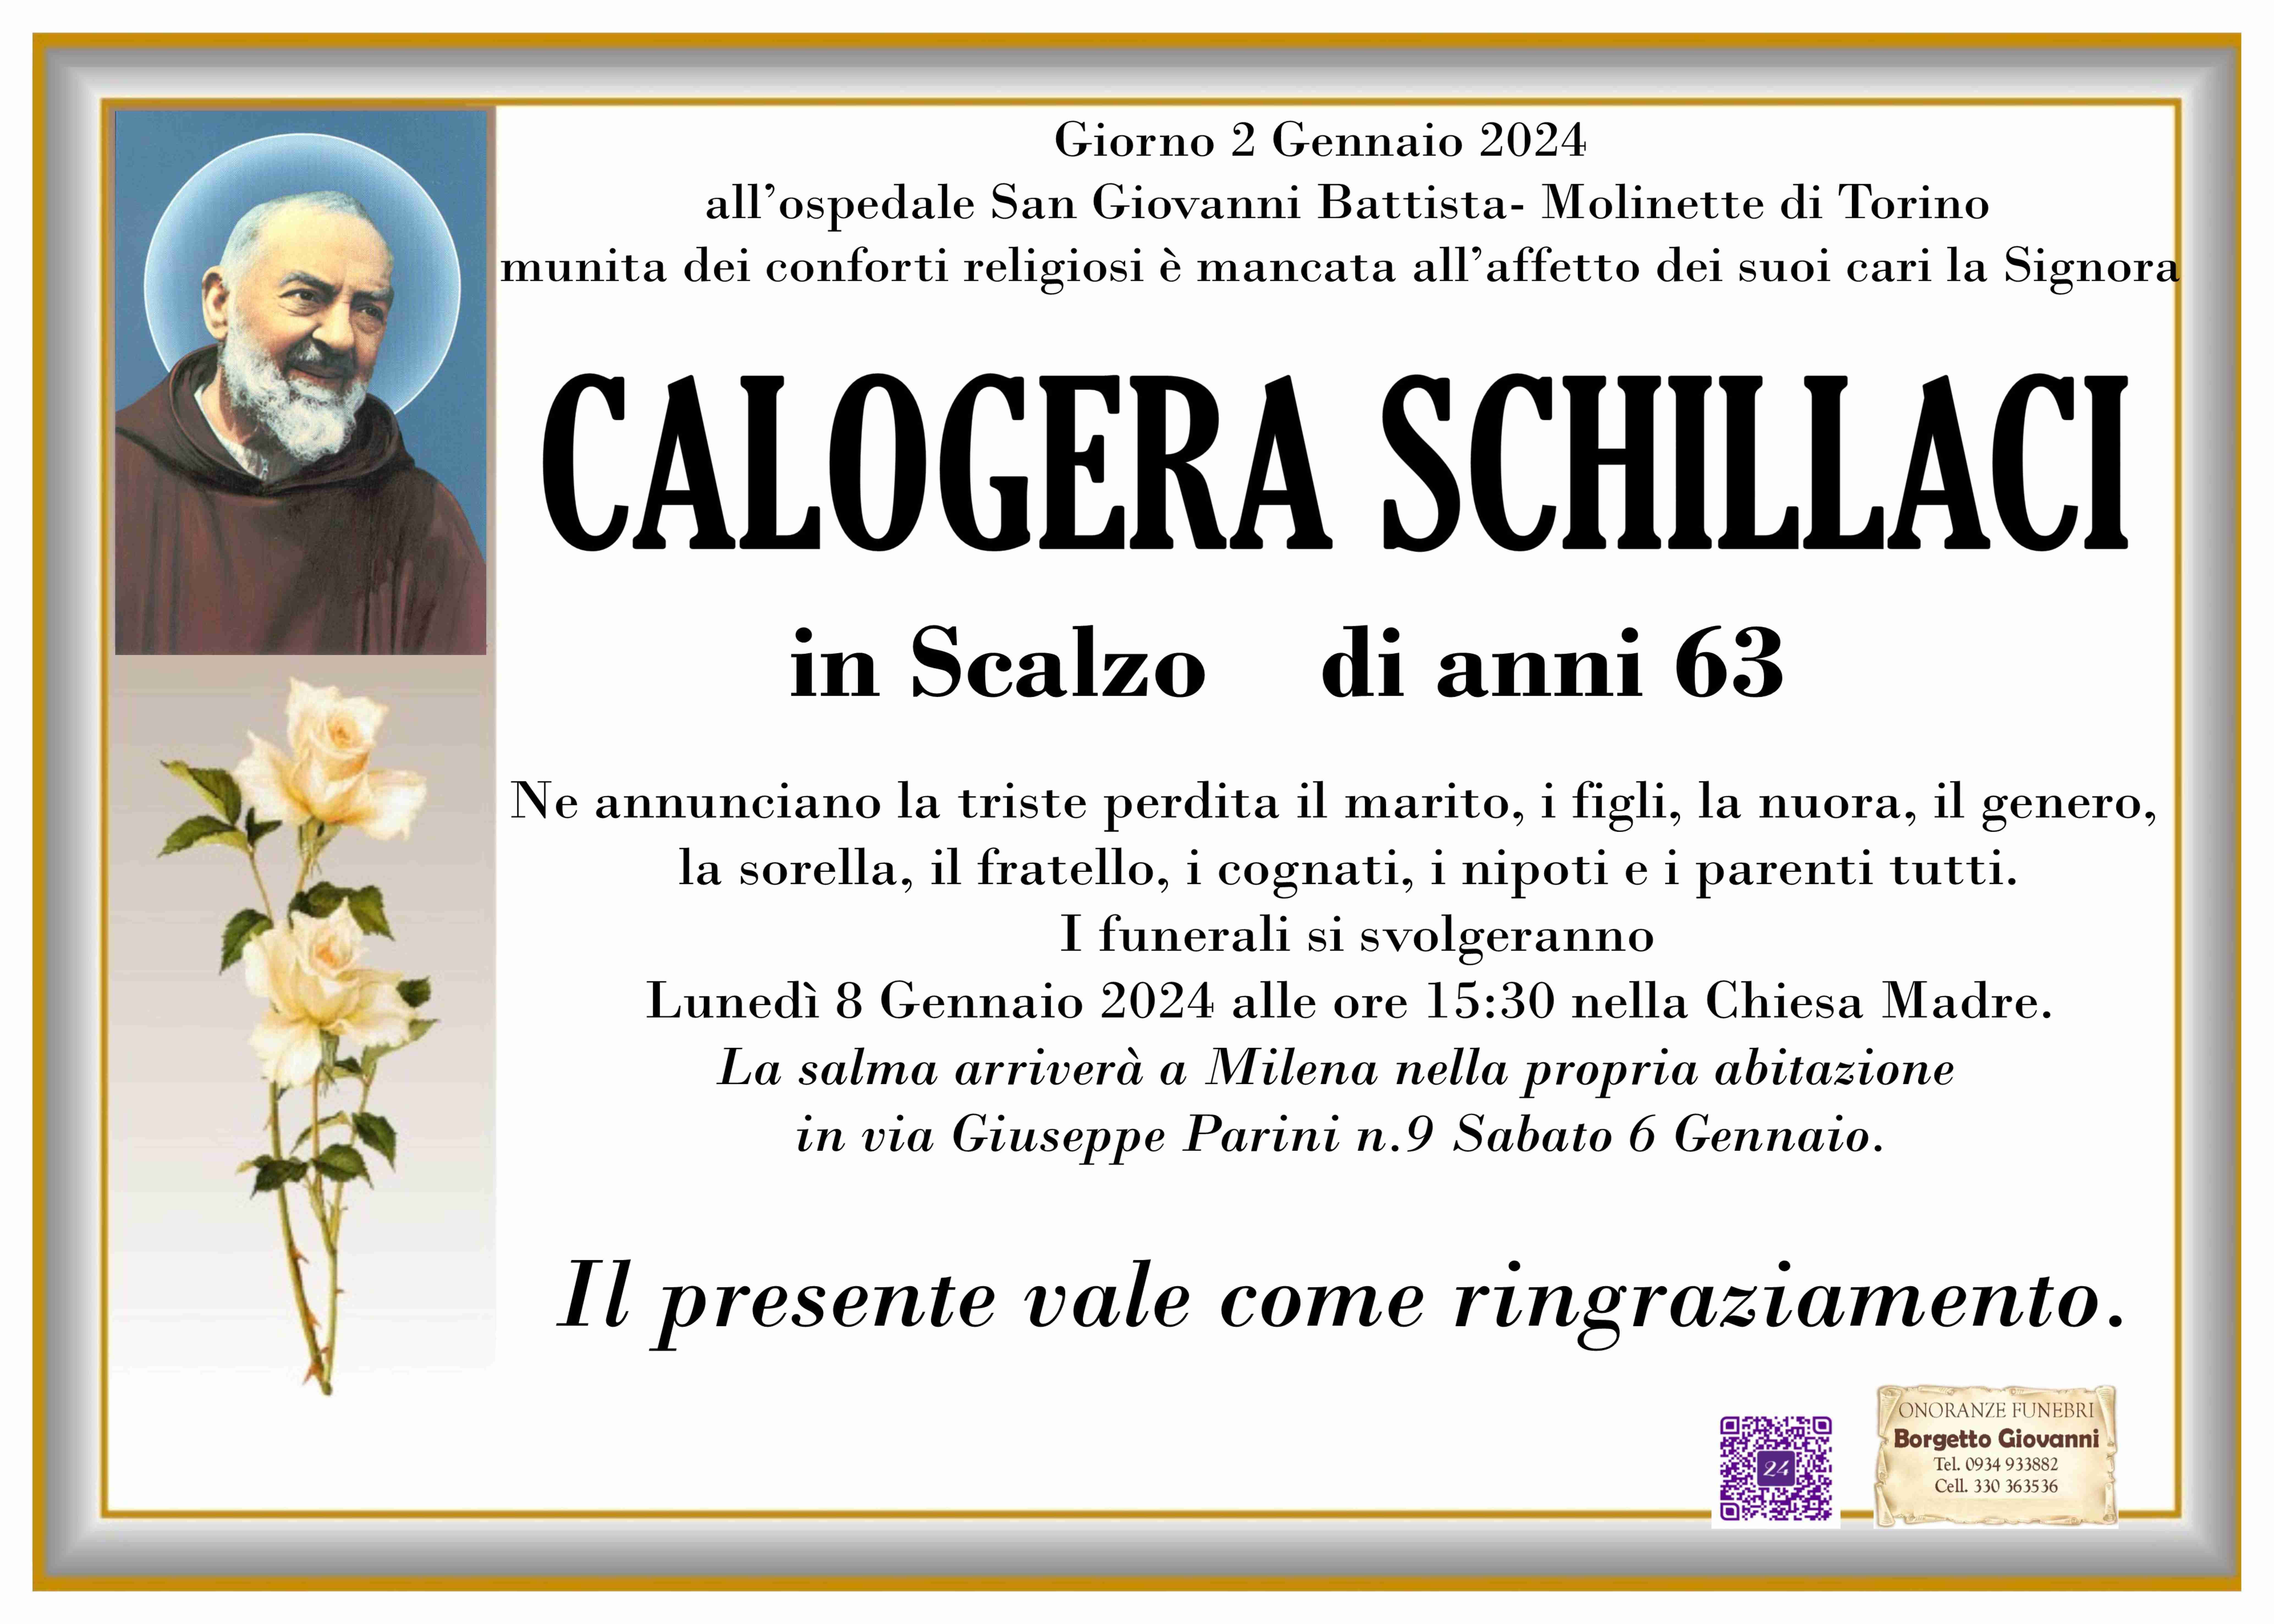 Calogera Schillaci